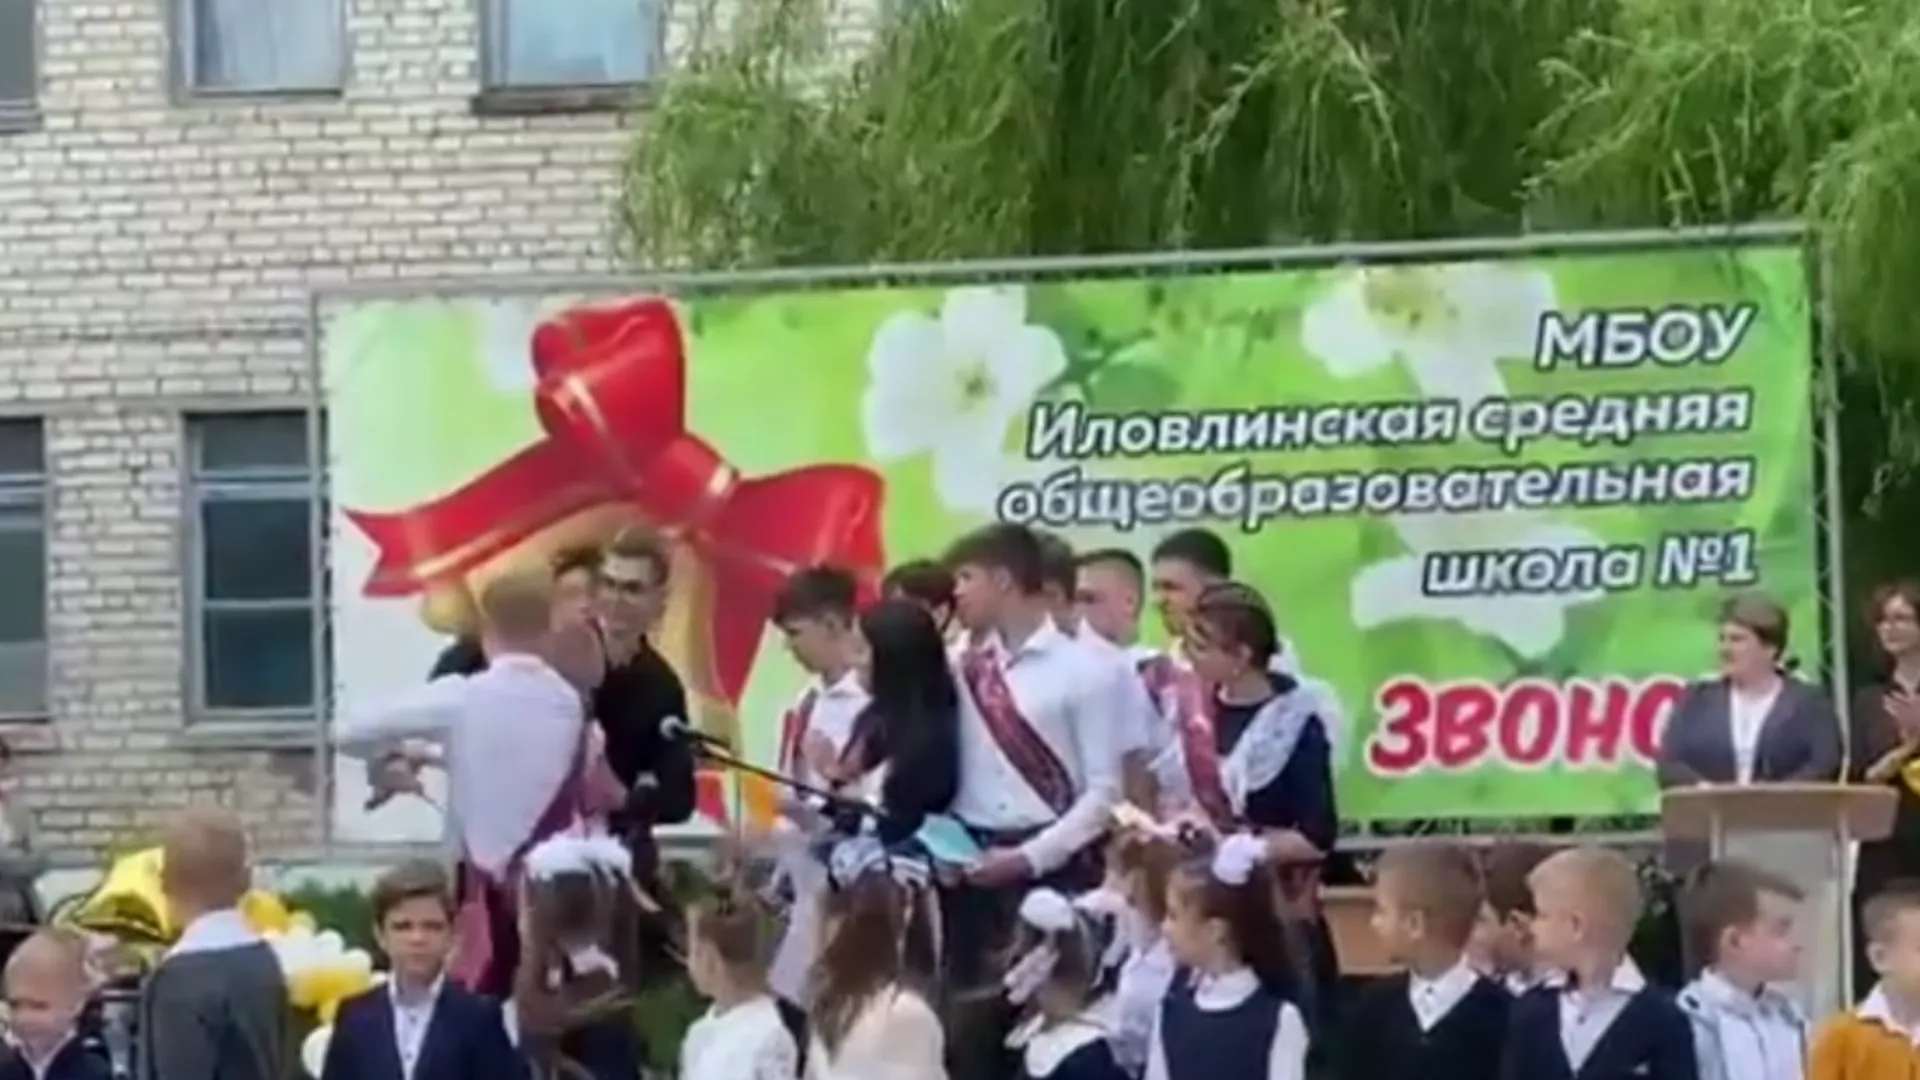 Стали известны подробности поножовщины в школе в Волгоградской области